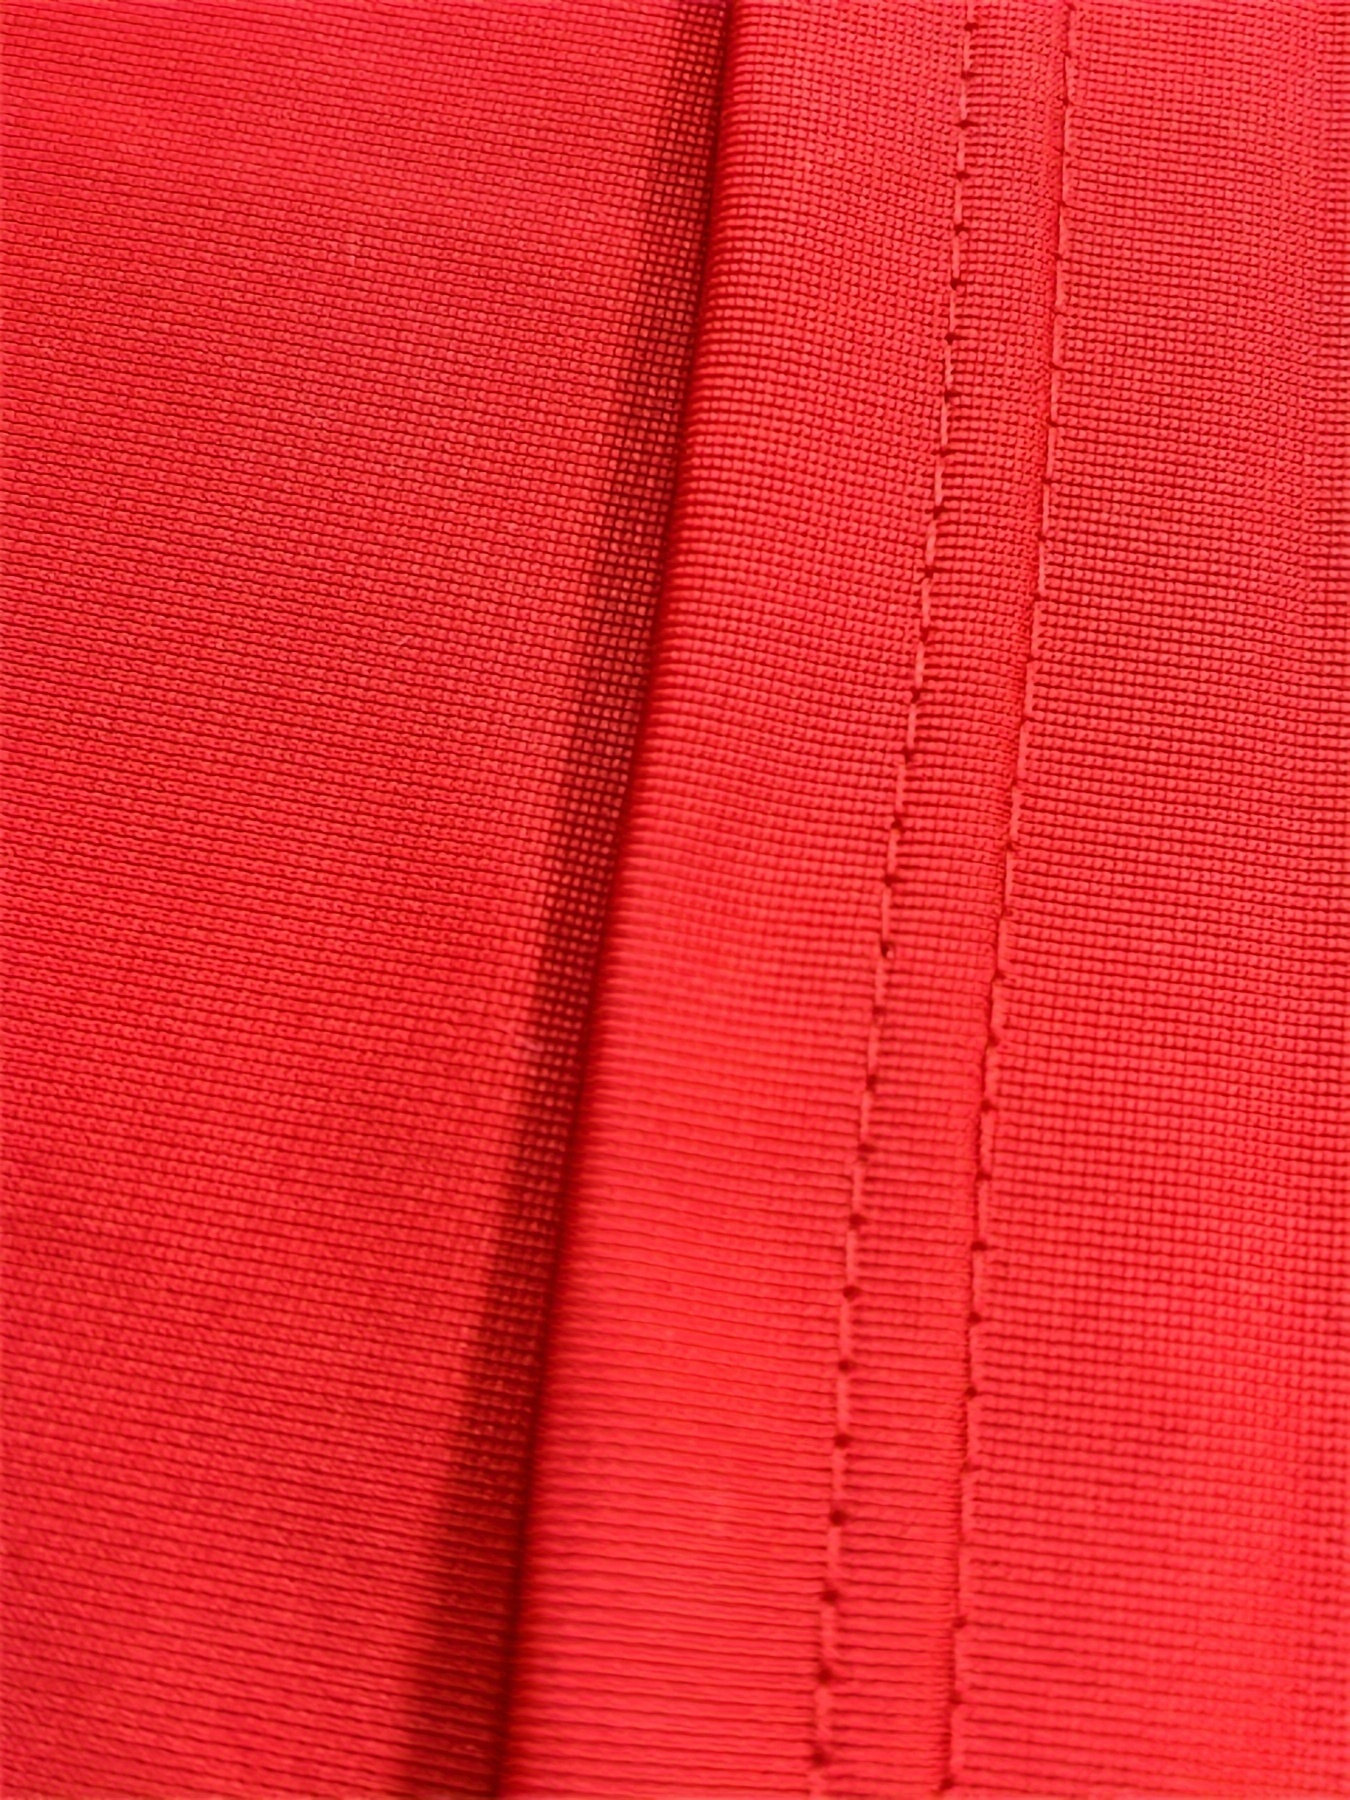 Camiseta De Fútbol Americano Roja Para Hombre número #80, Uniforme De Manga  Corta Con Cuello En V Para Entrenamiento Y Partido